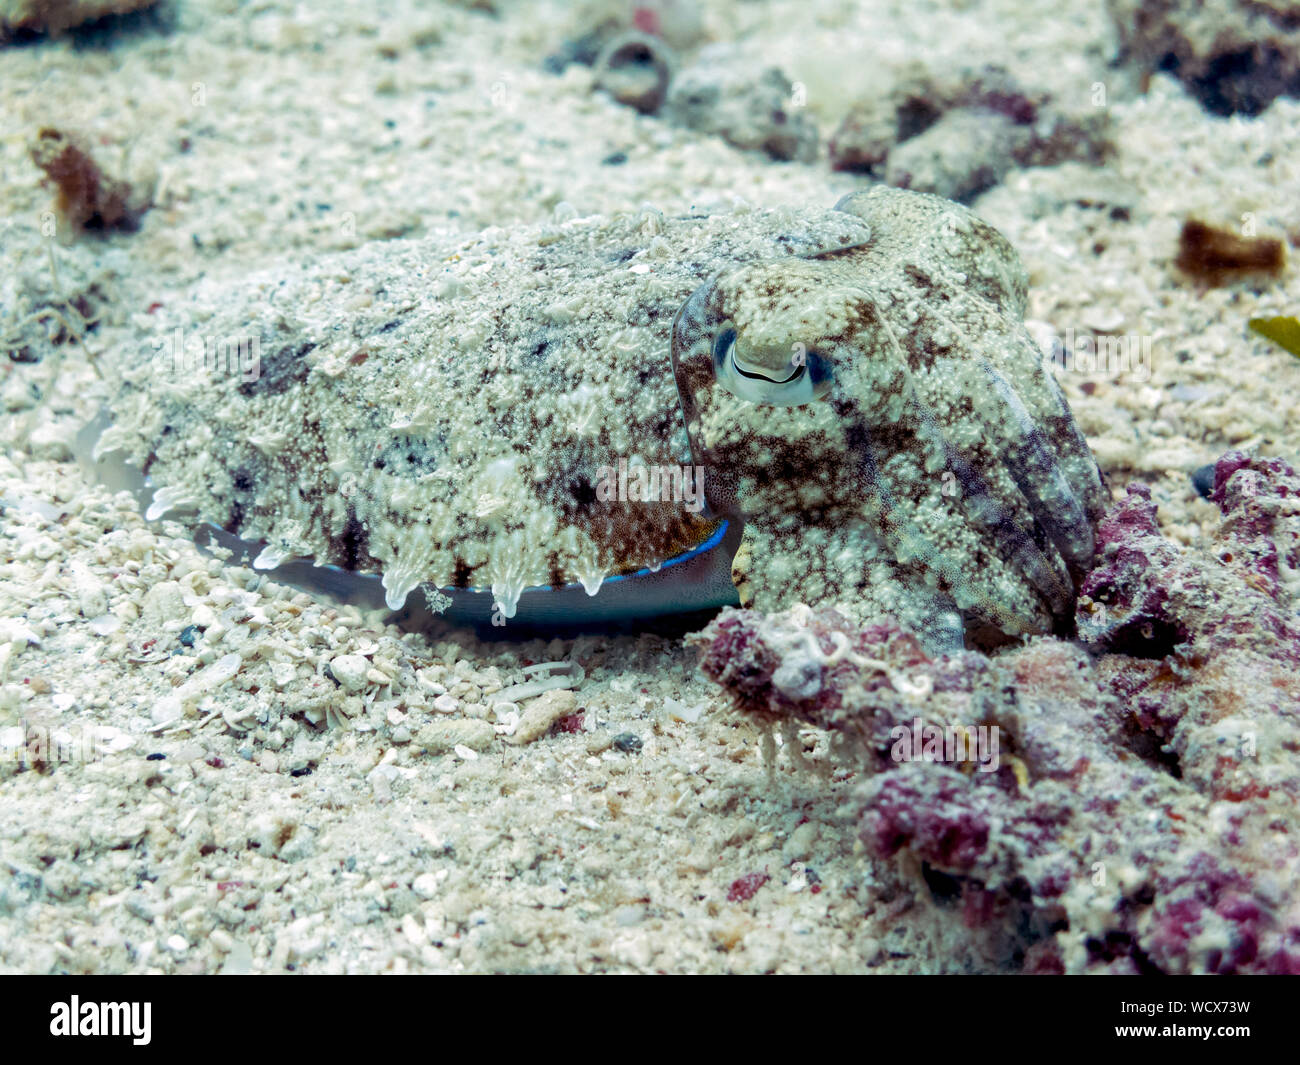 La seiche camouflé dans les récifs coralliens, l'île de Bornéo Sipadan - Banque D'Images